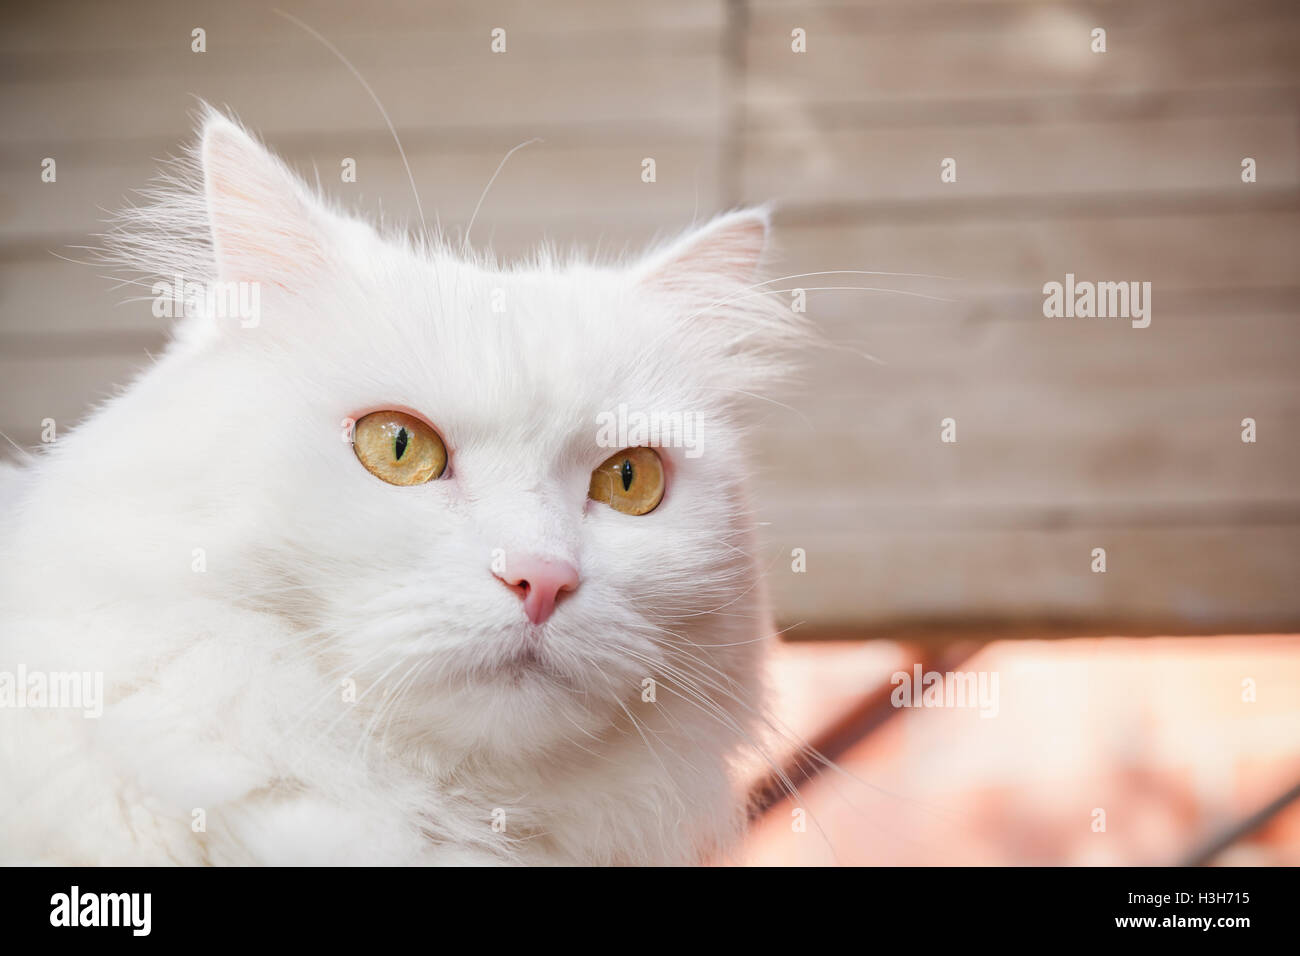 Closeup portrait of white fluffy cat avec des yeux jaunes Banque D'Images